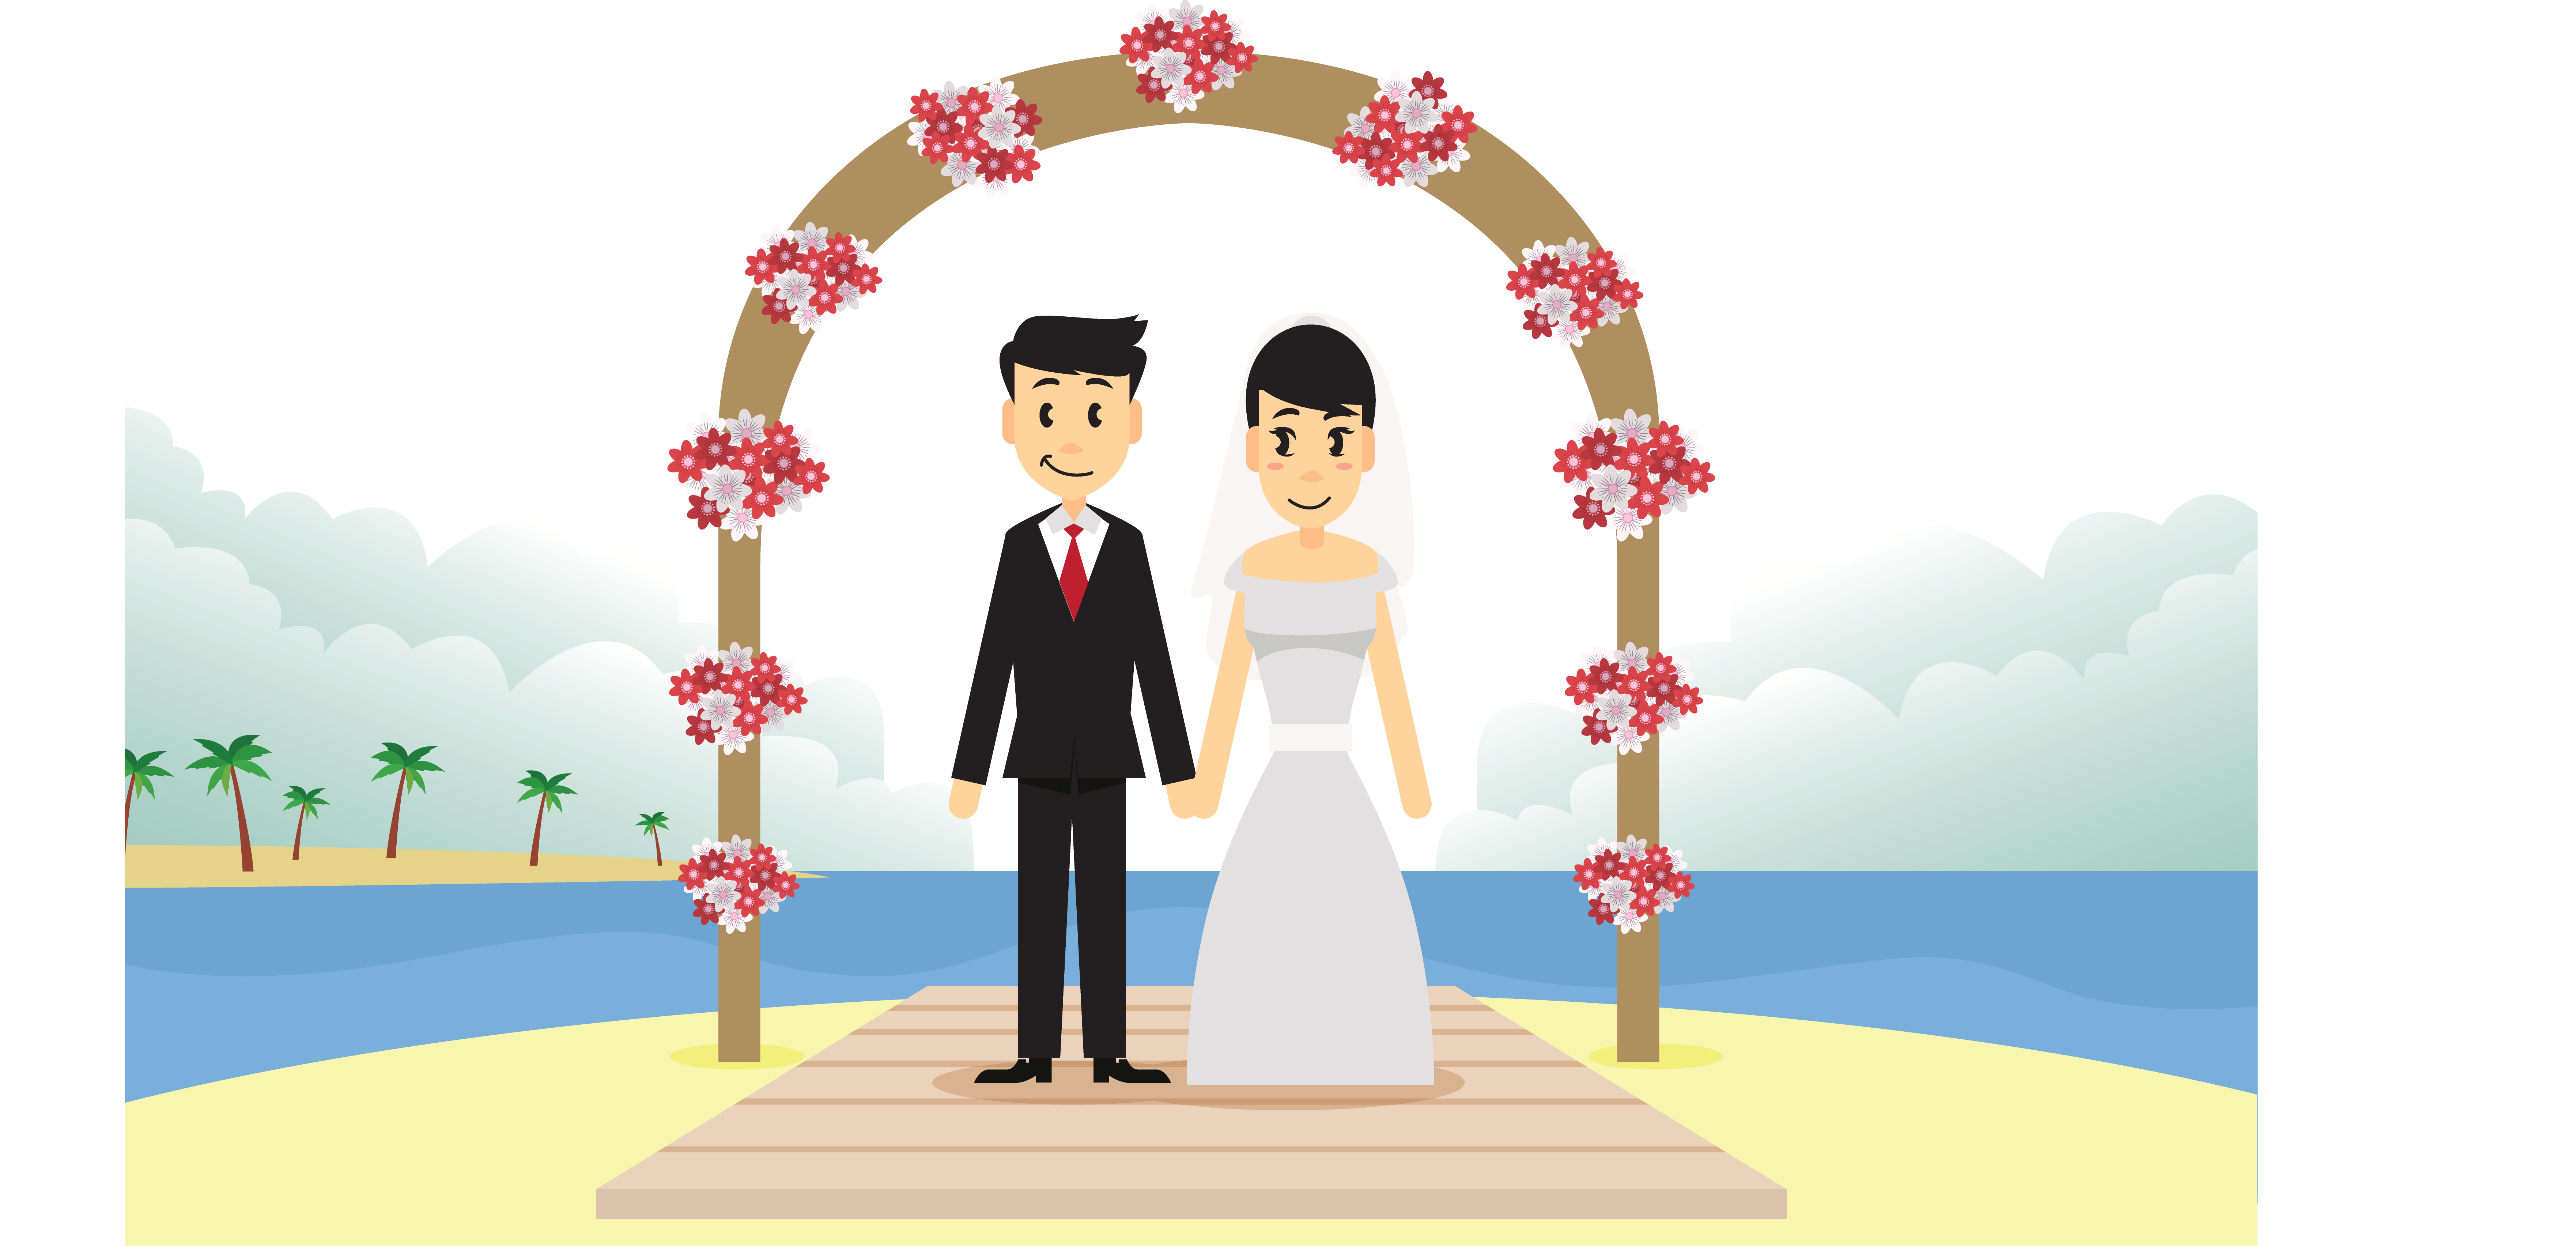 Bridegroom Invitation Scene Illustration Wedding Free HD Image Clipart